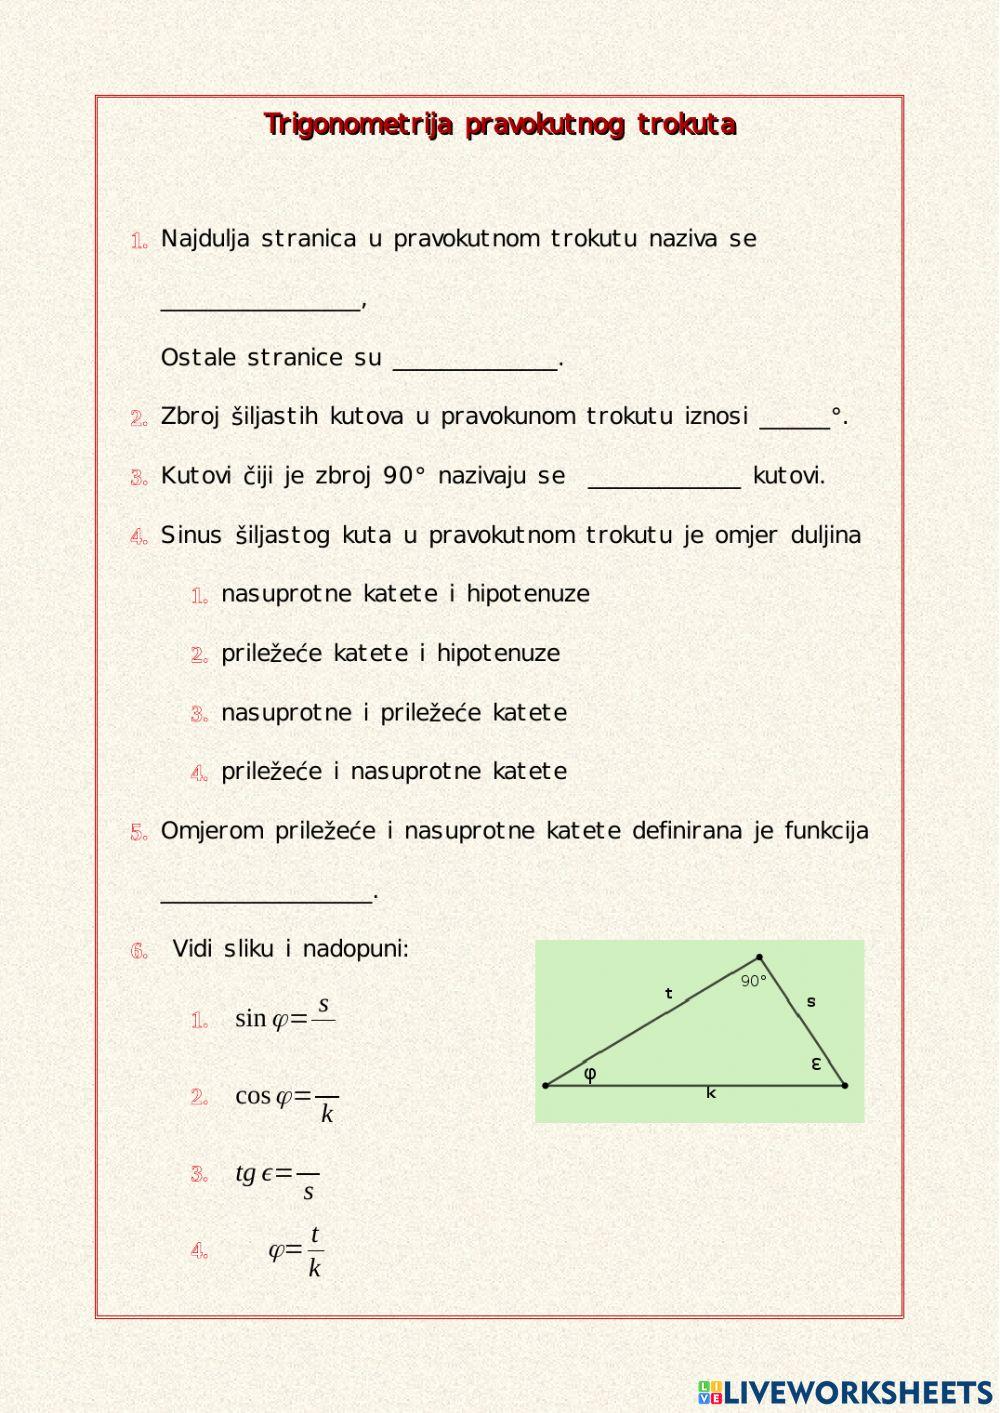 Trigonometrija pravokutnog trokuta